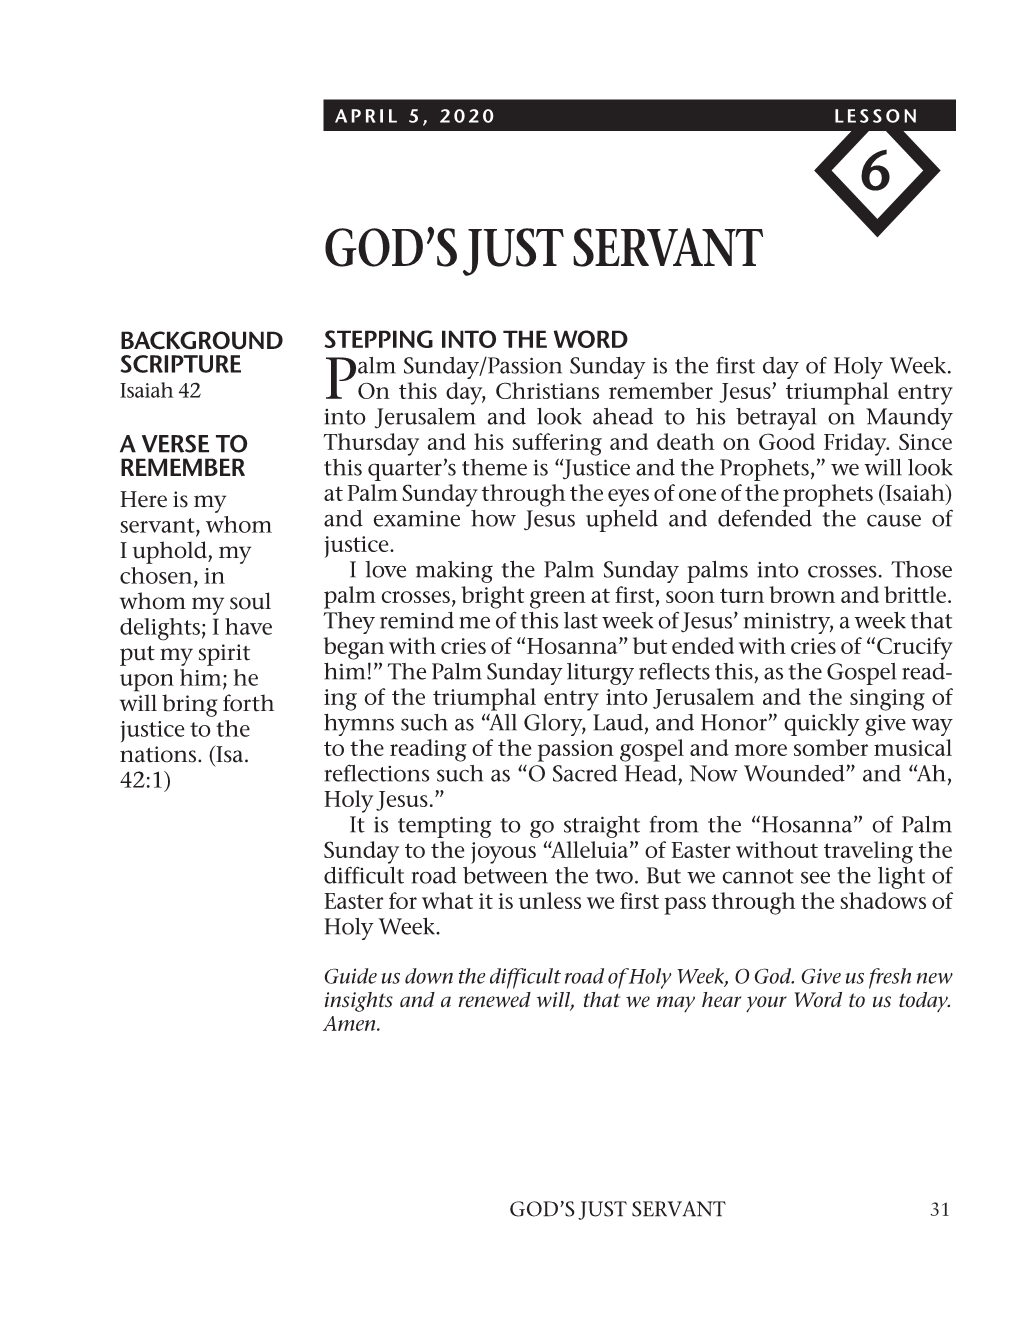 God's Just Servant